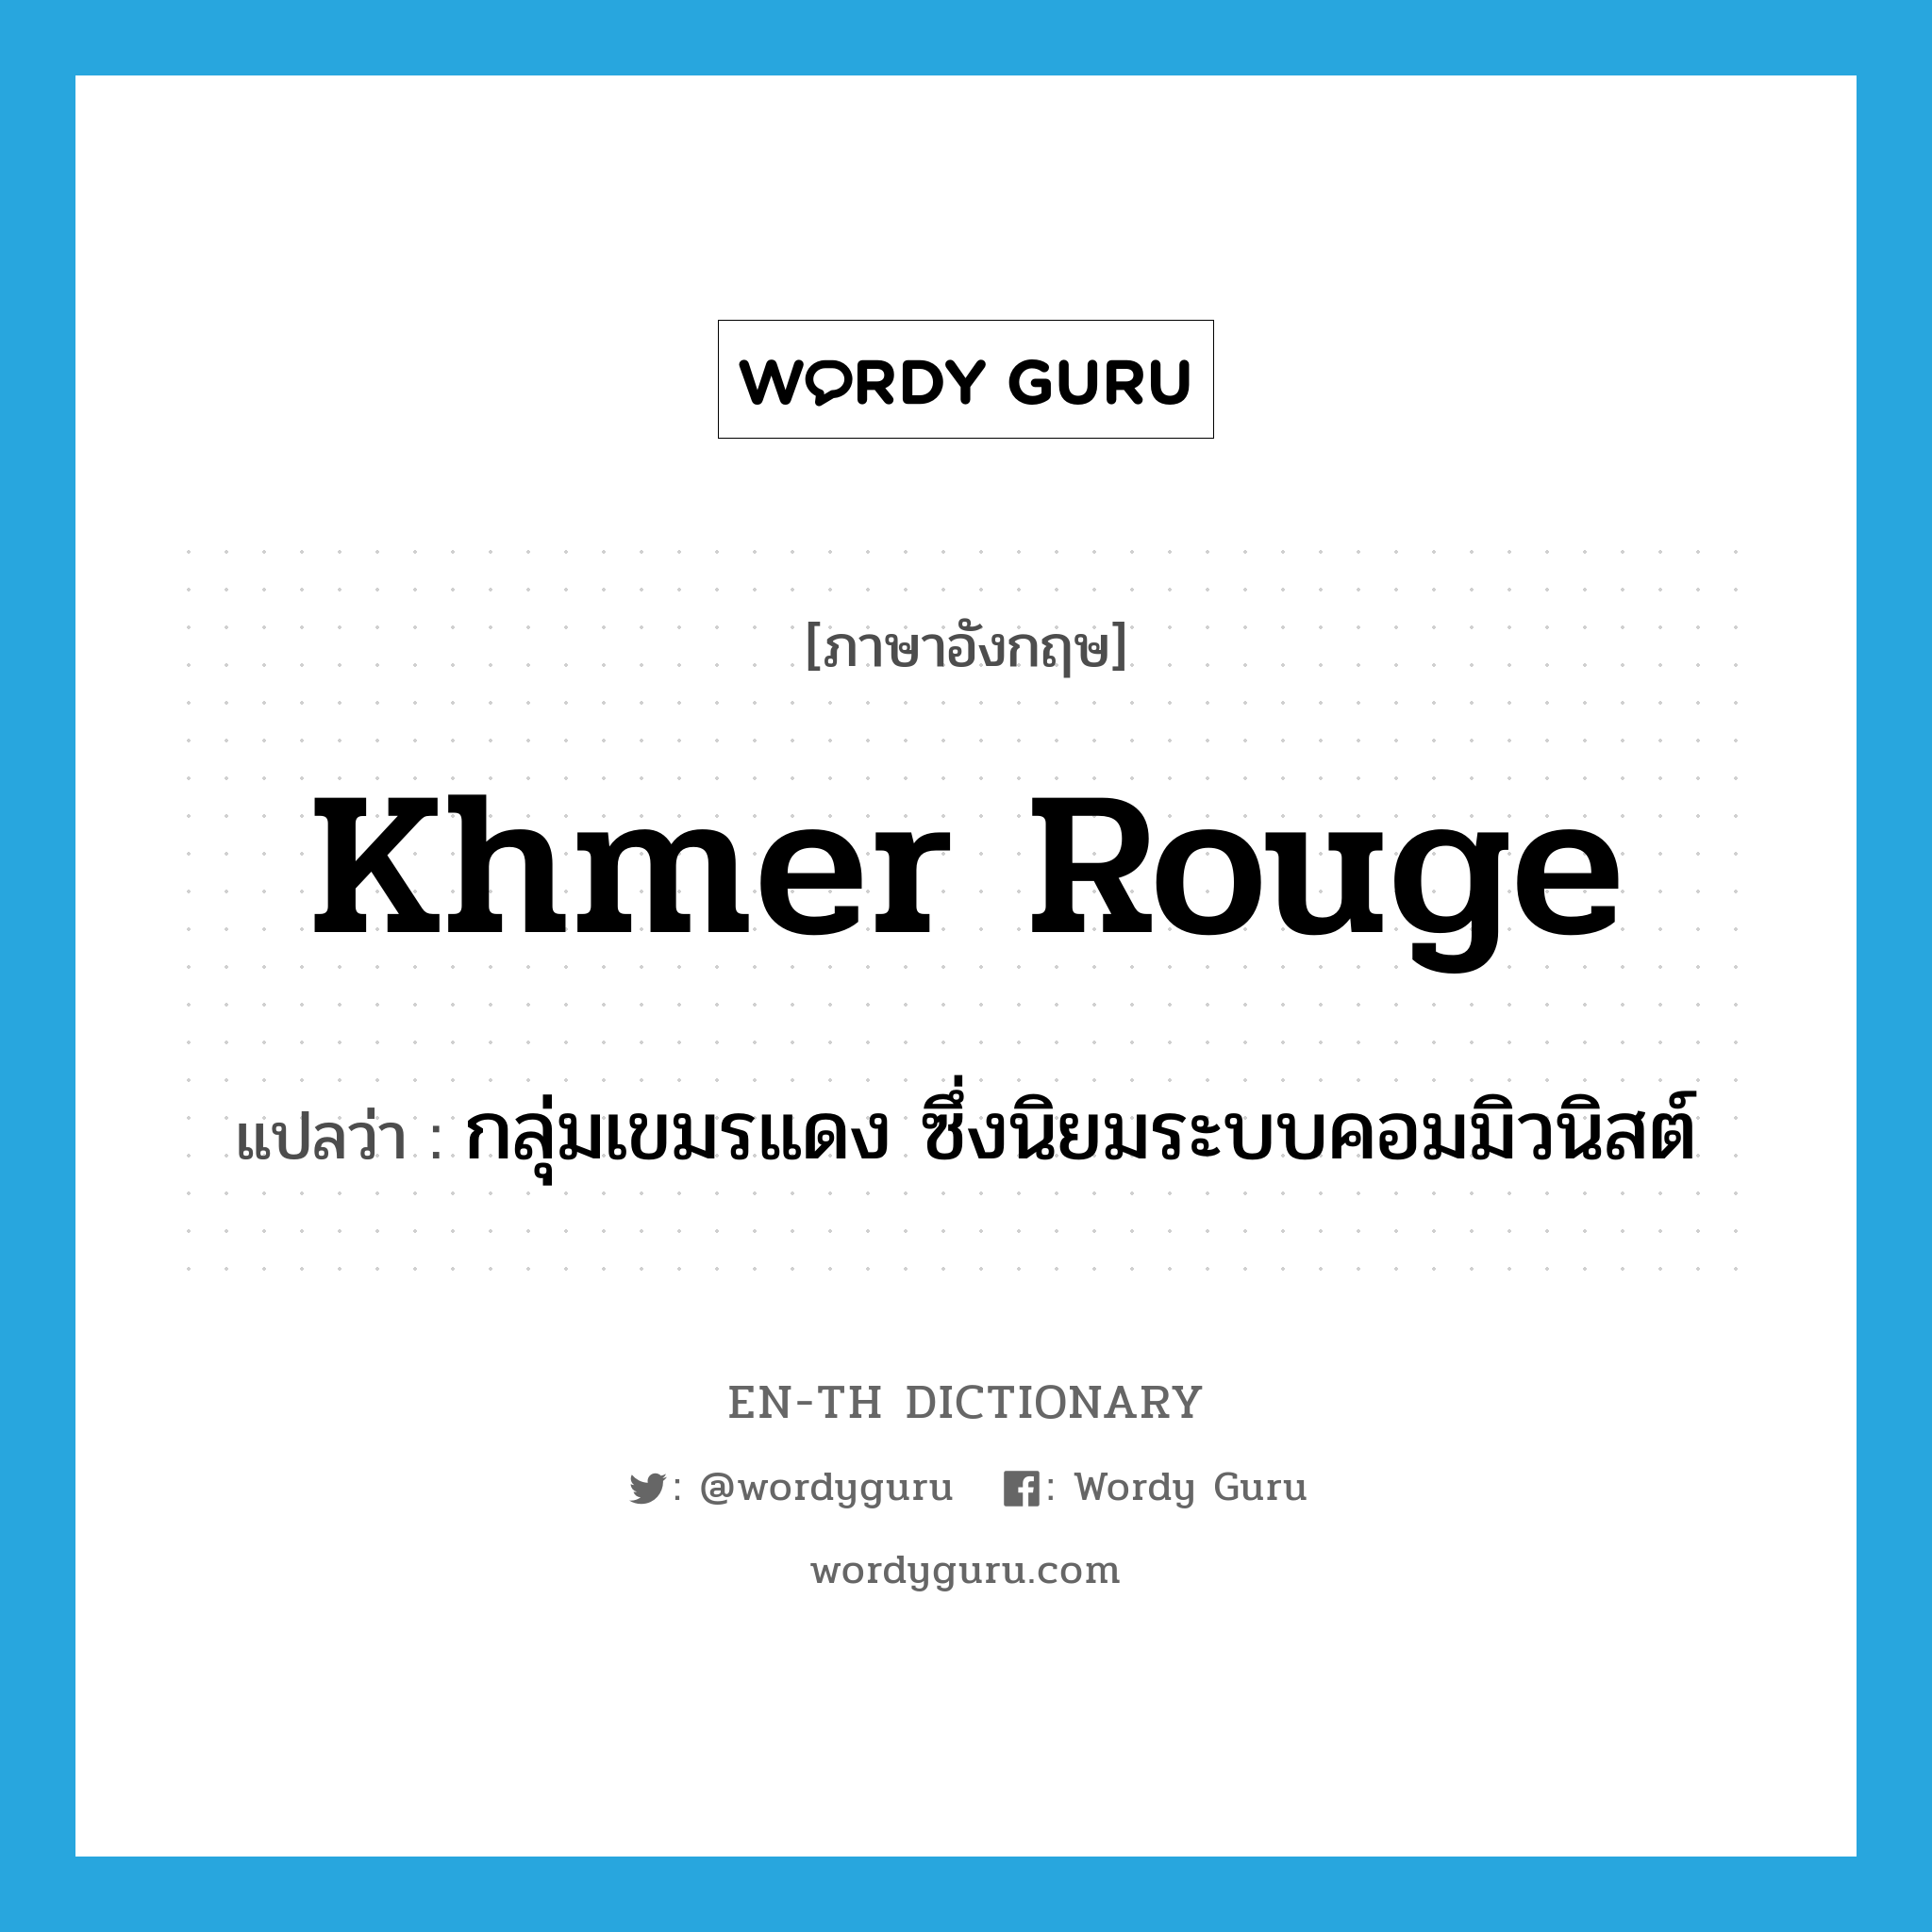 Khmer Rouge แปลว่า?, คำศัพท์ภาษาอังกฤษ Khmer Rouge แปลว่า กลุ่มเขมรแดง ซึ่งนิยมระบบคอมมิวนิสต์ ประเภท N หมวด N